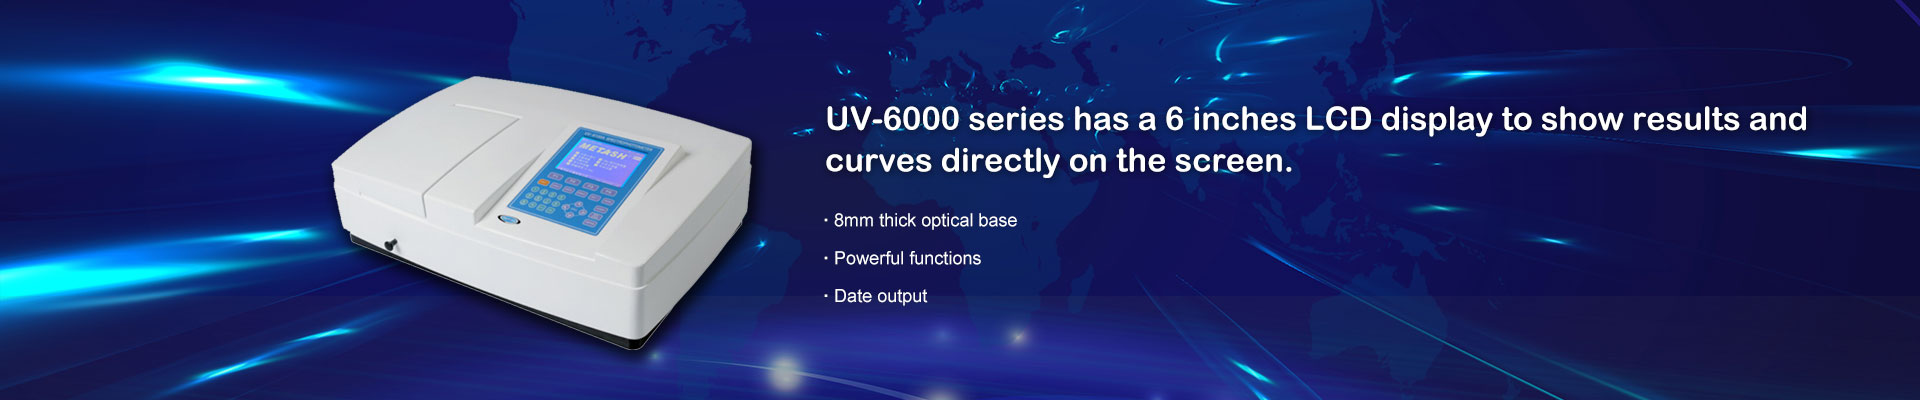 Espectrofotómetro UV UV-5800PC